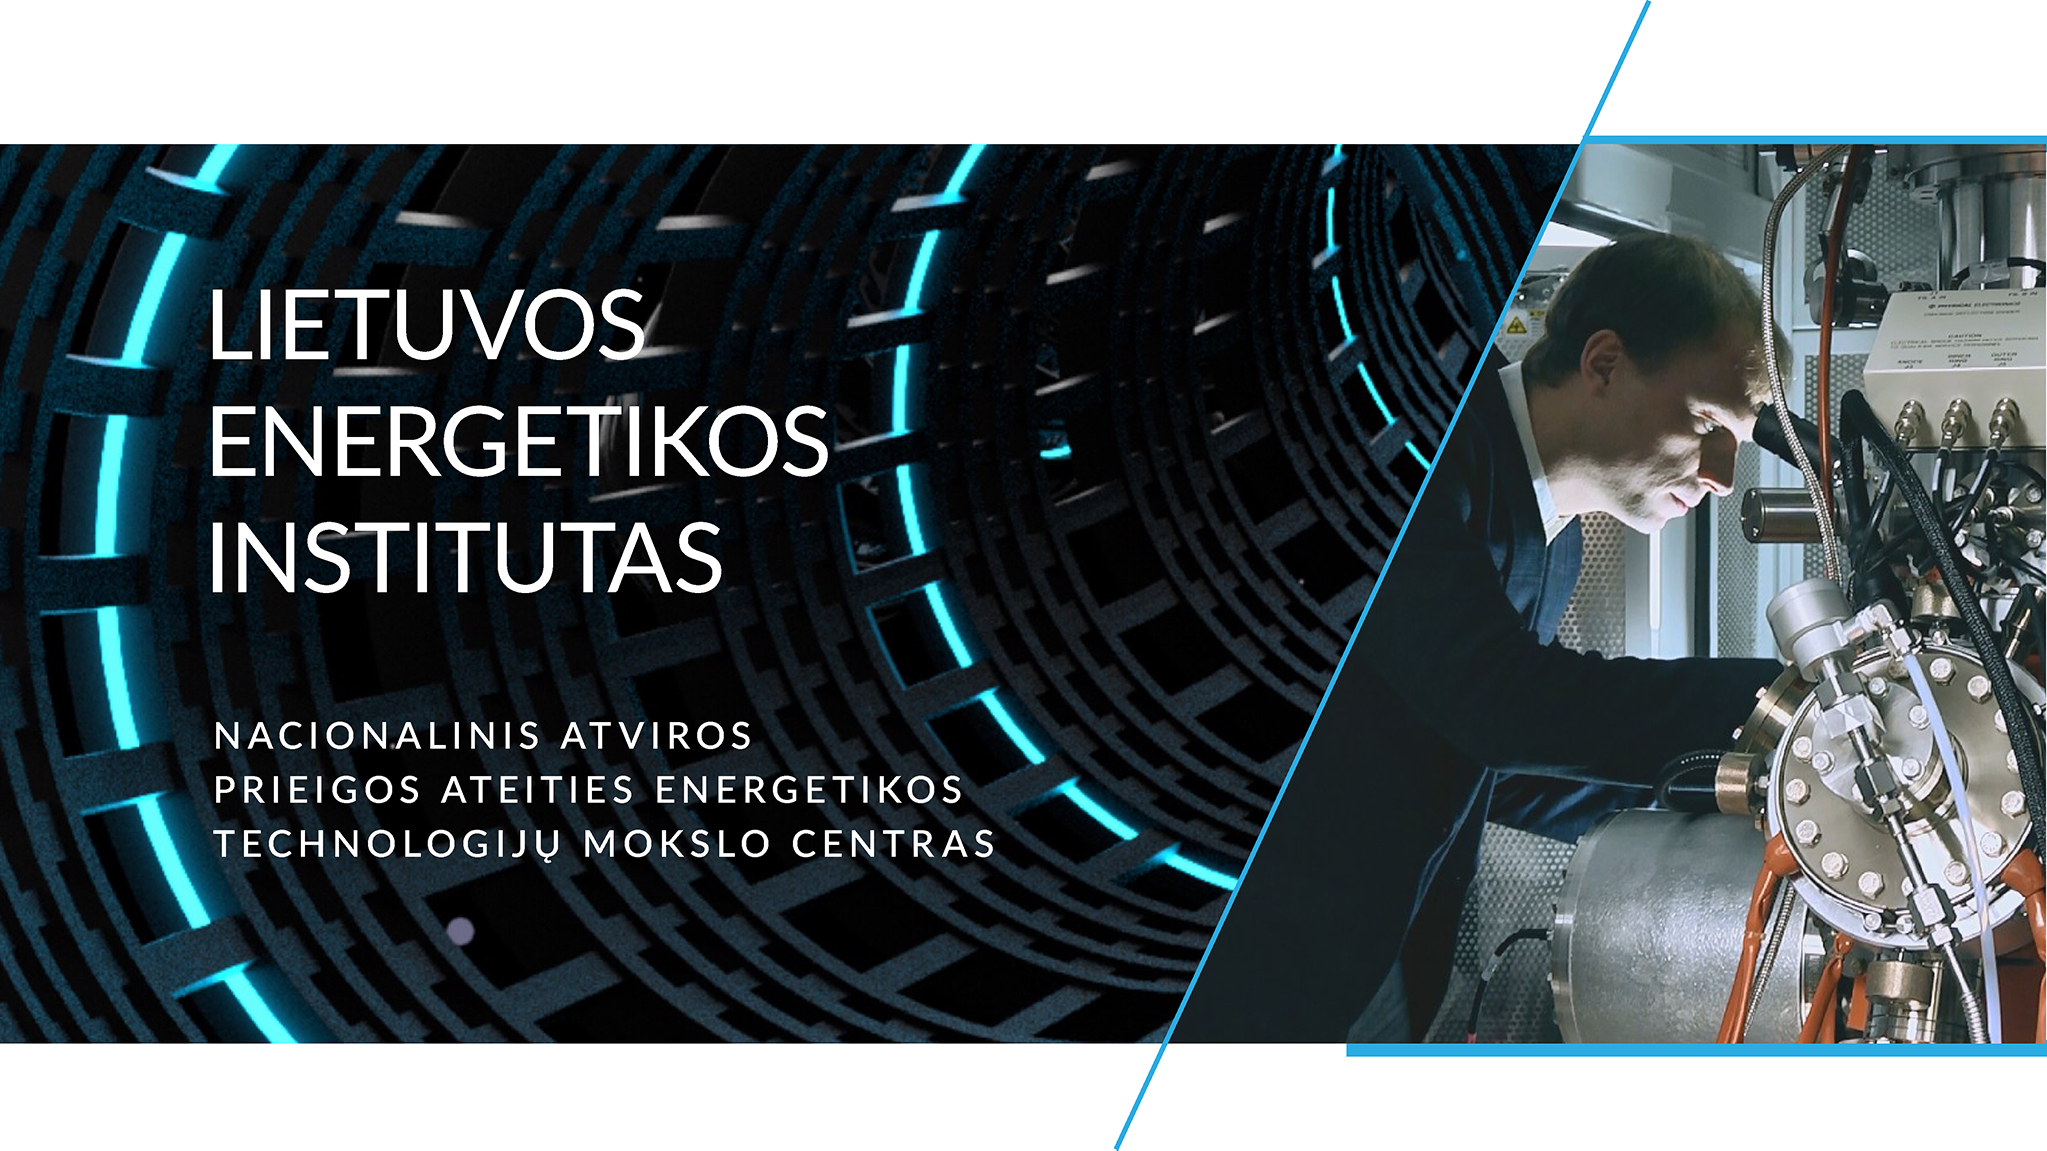 Lietuvos eneregetikos instituto viršelio paveikslėlis socialiniams tinklams